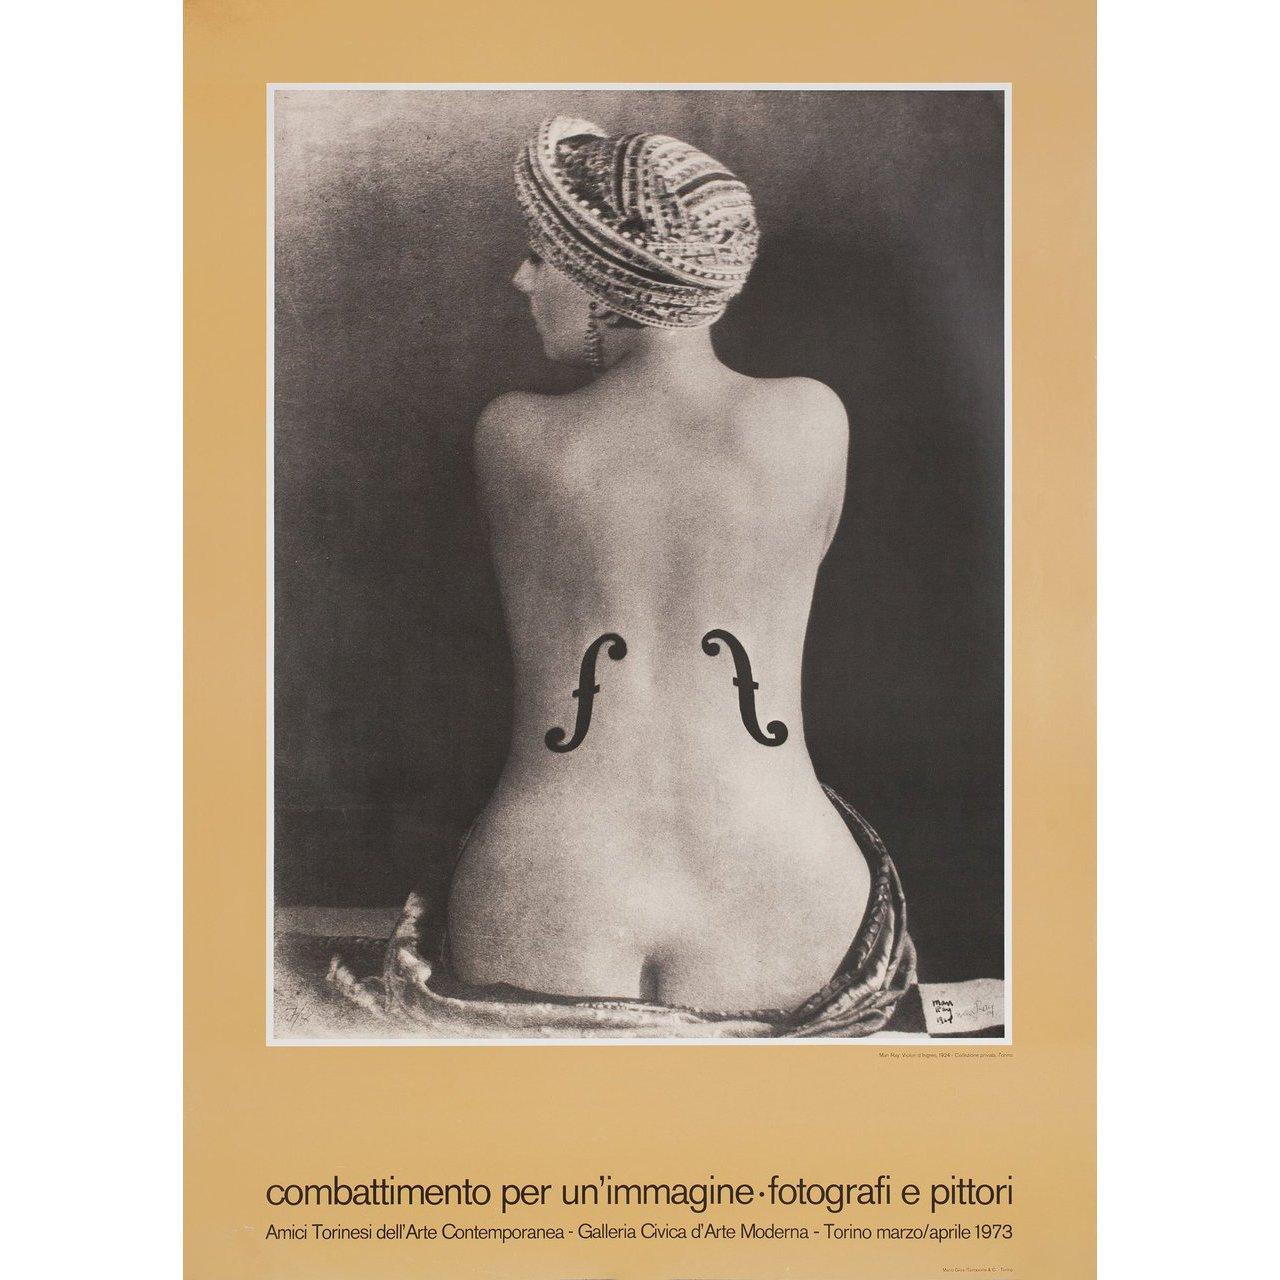 Man Ray Combattimento per un'immagine-photografi e pittori 1974 Italian For Sale